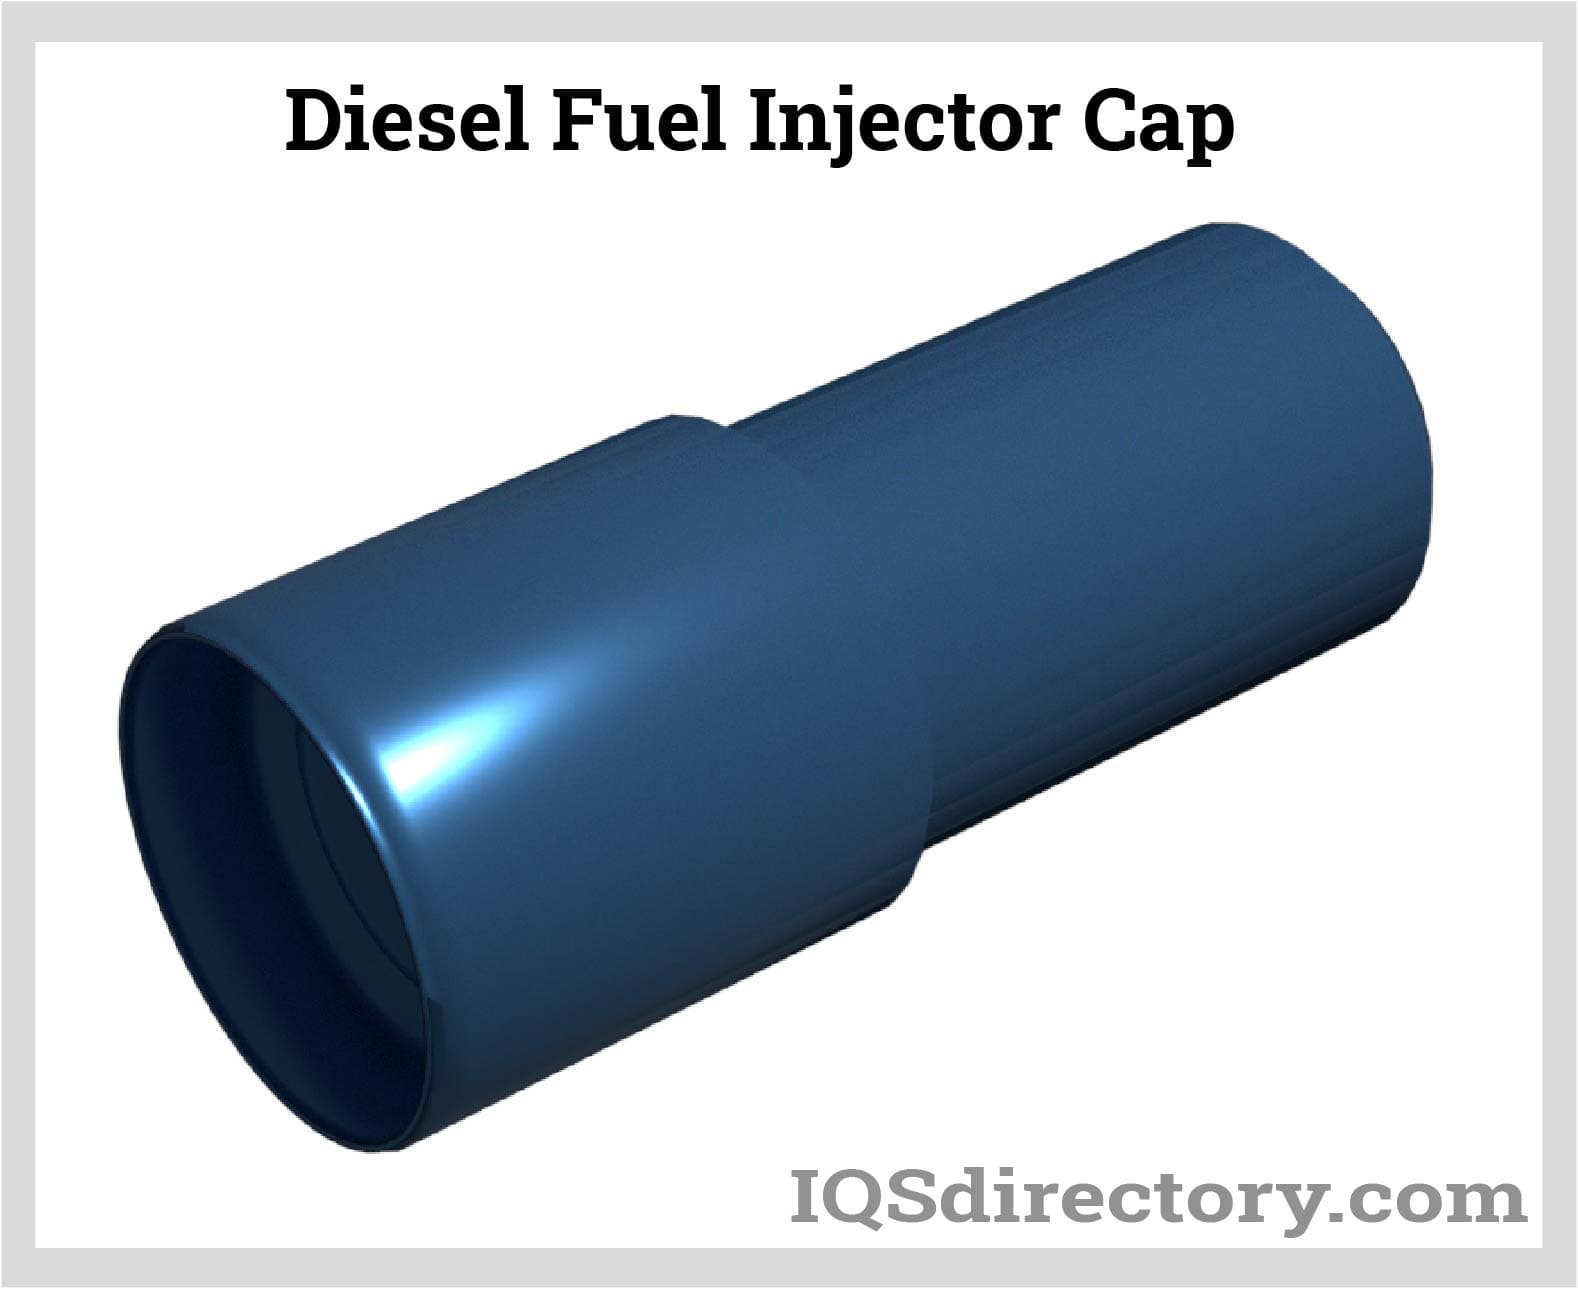 Diesel Fuel Injector Cap